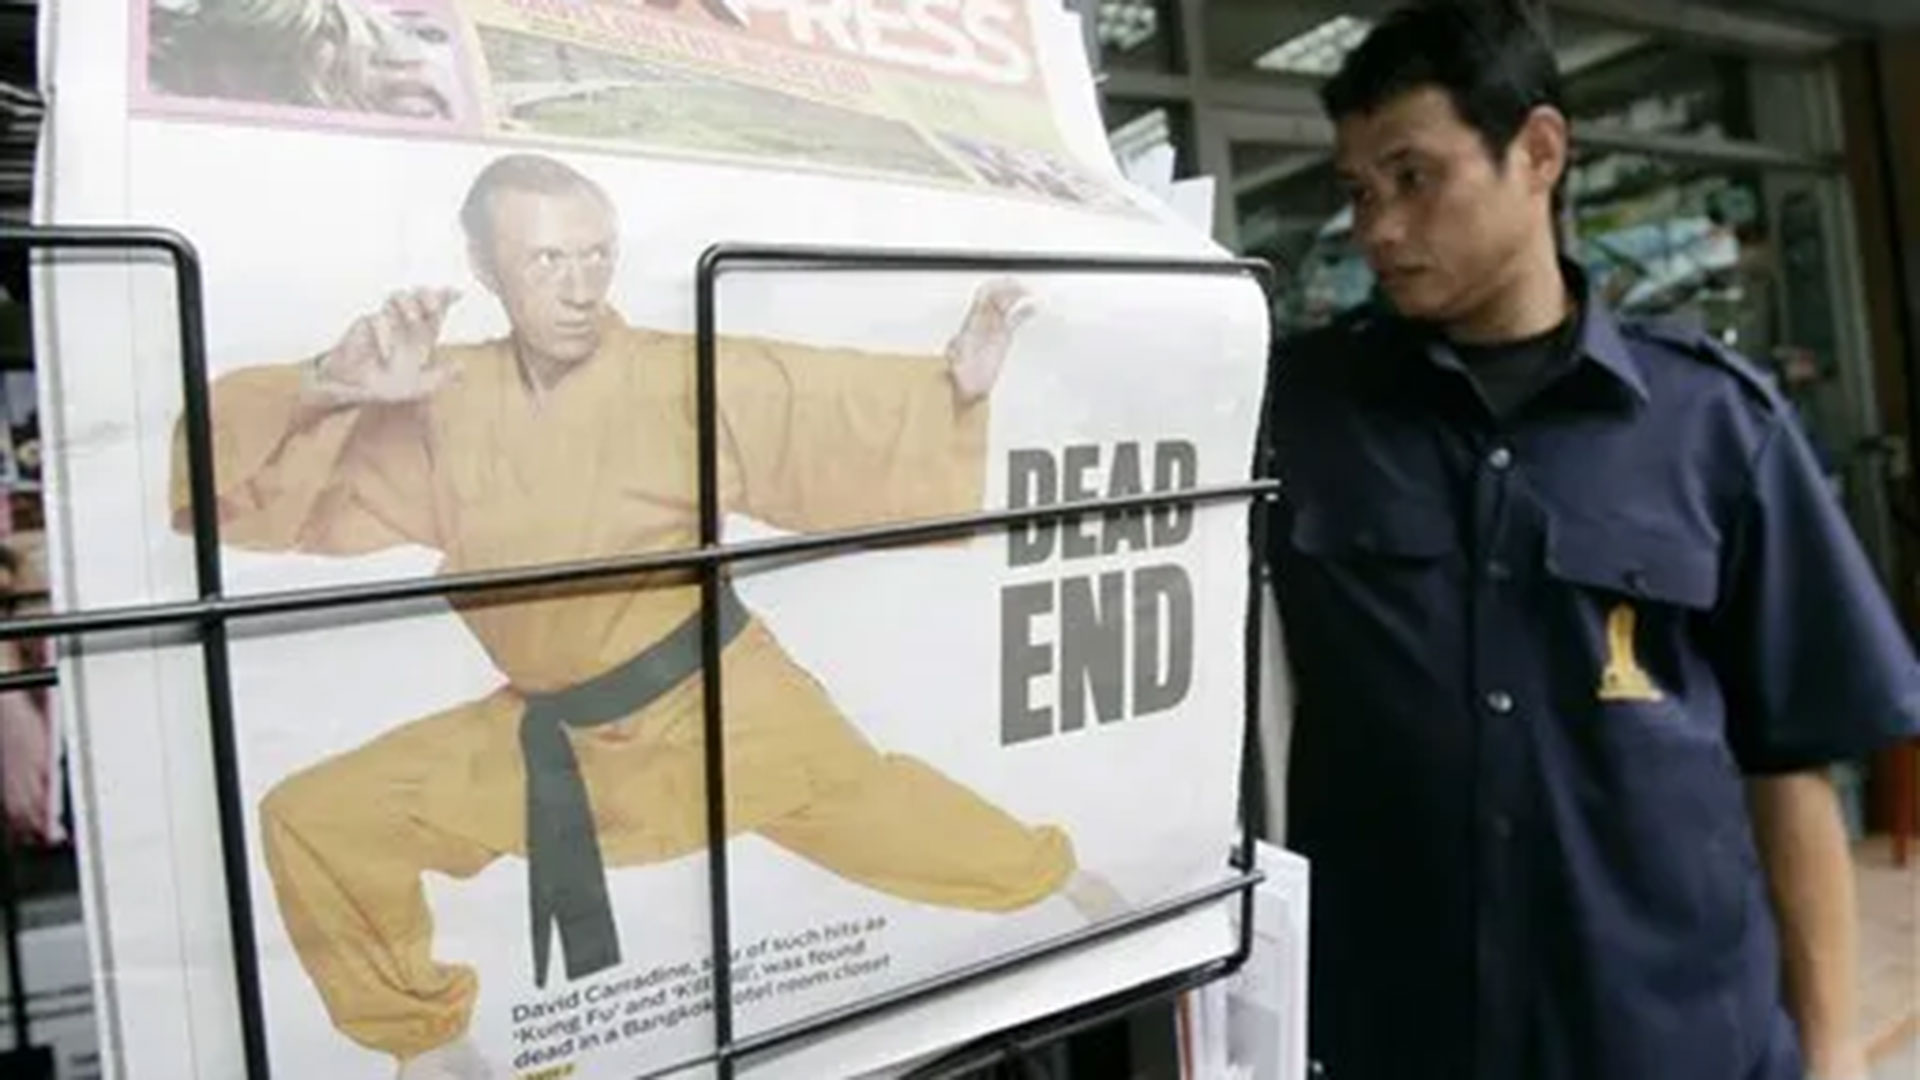 Una copia del periódico Daily XPRESS de Tailandia informaba sobre la muerte del actor David Carradine, en un puesto de periódicos en Bangkok, el viernes 5 de junio de 2009. (AP Photo/Sakchai Lalit)